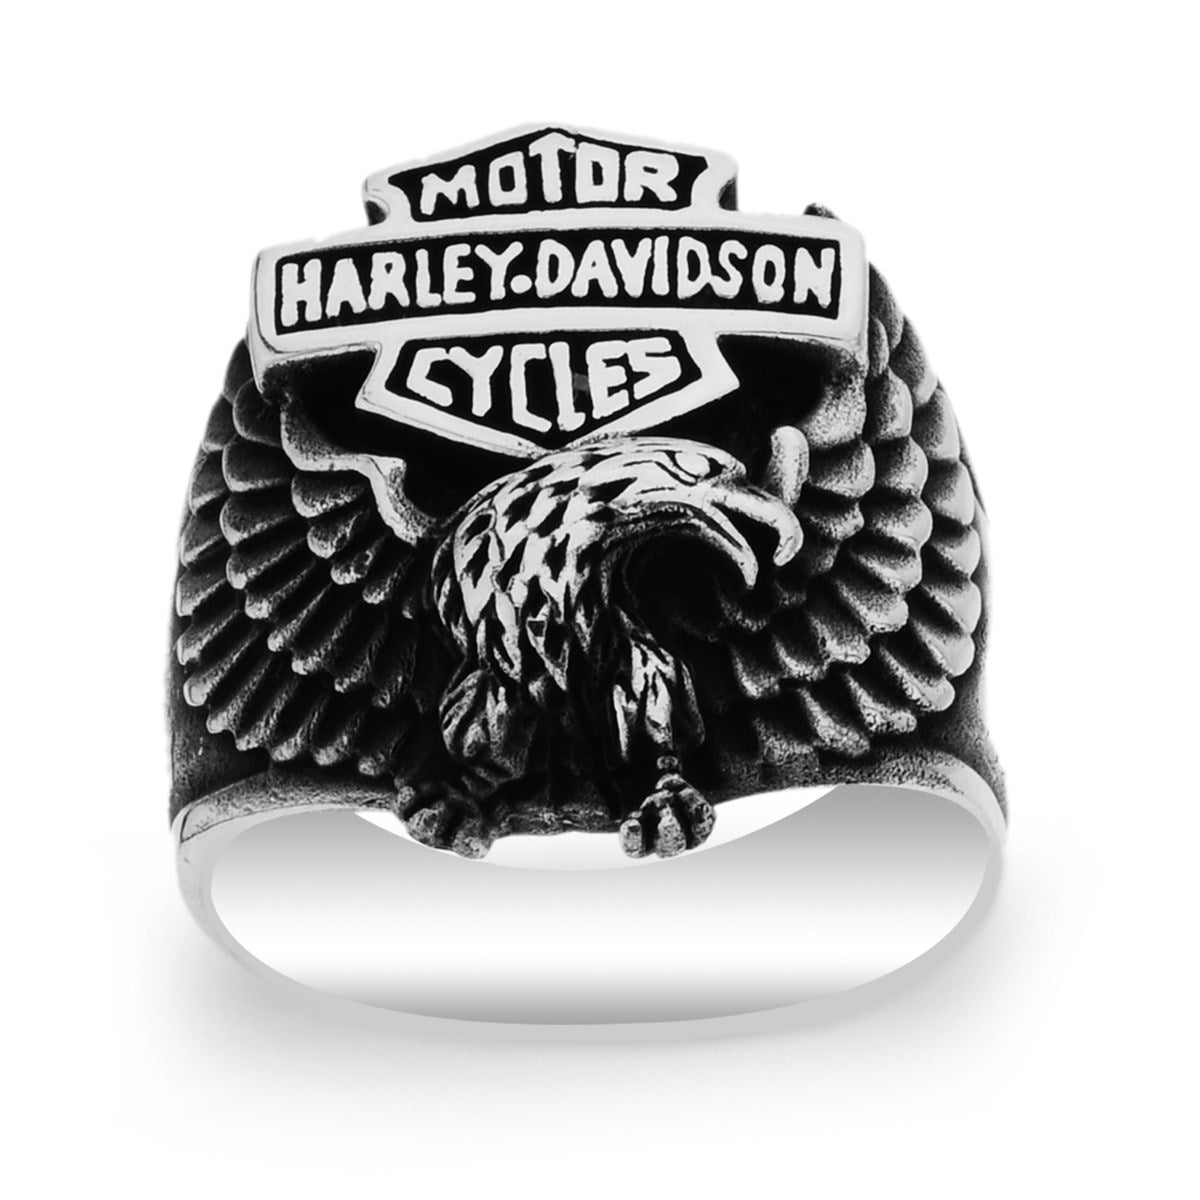 Silver Eagle Model Harley Davidson Biker Ring